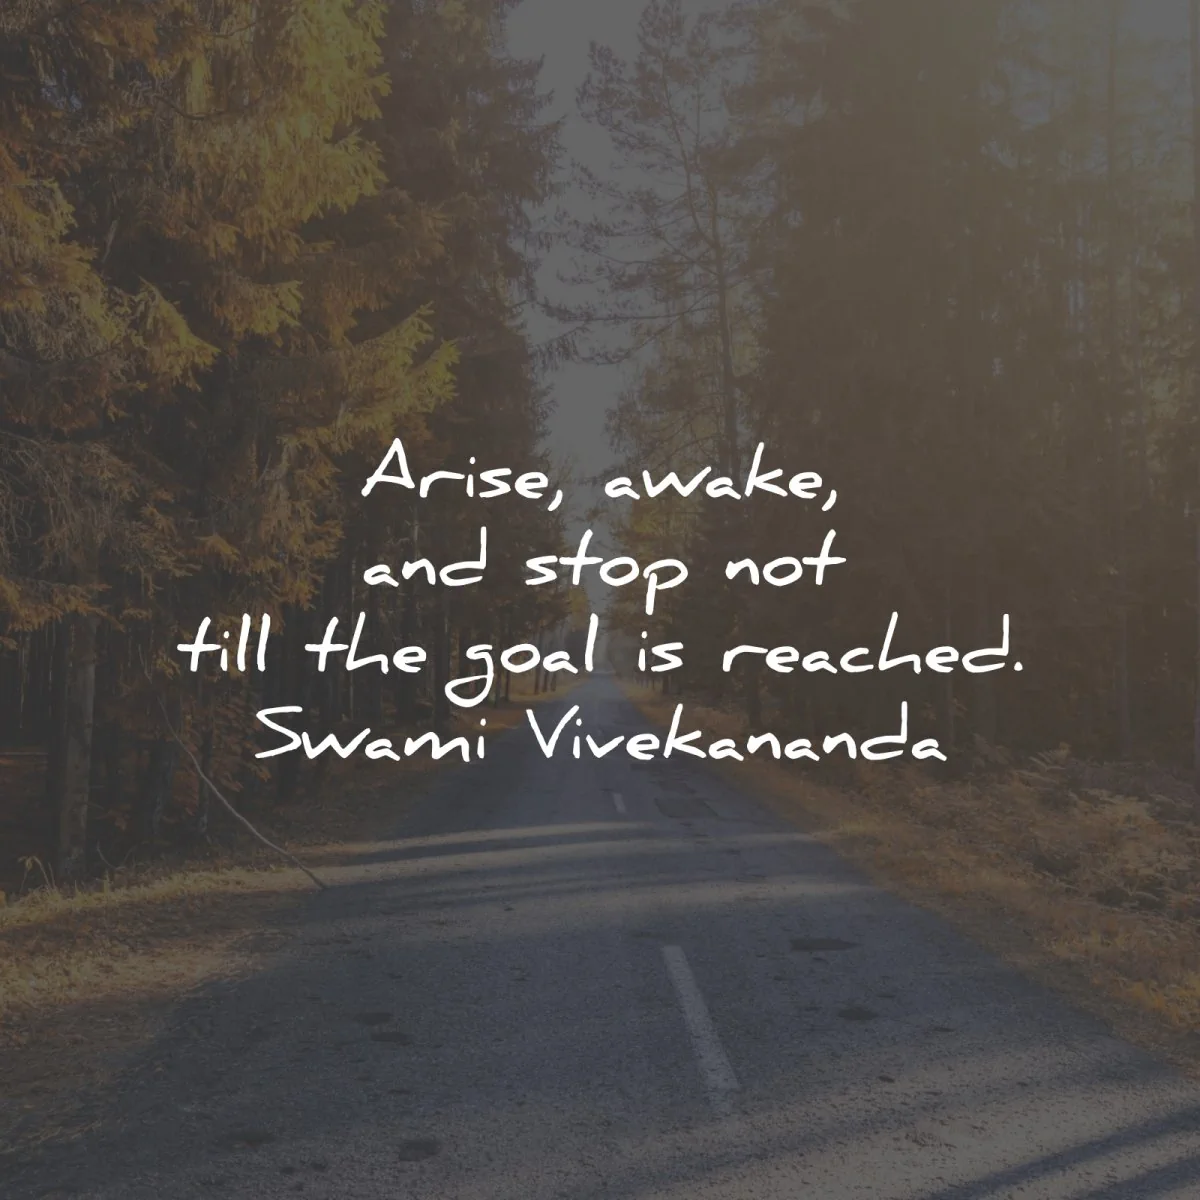 swami vivekananda quotes arise awake stop goal reached wisdom